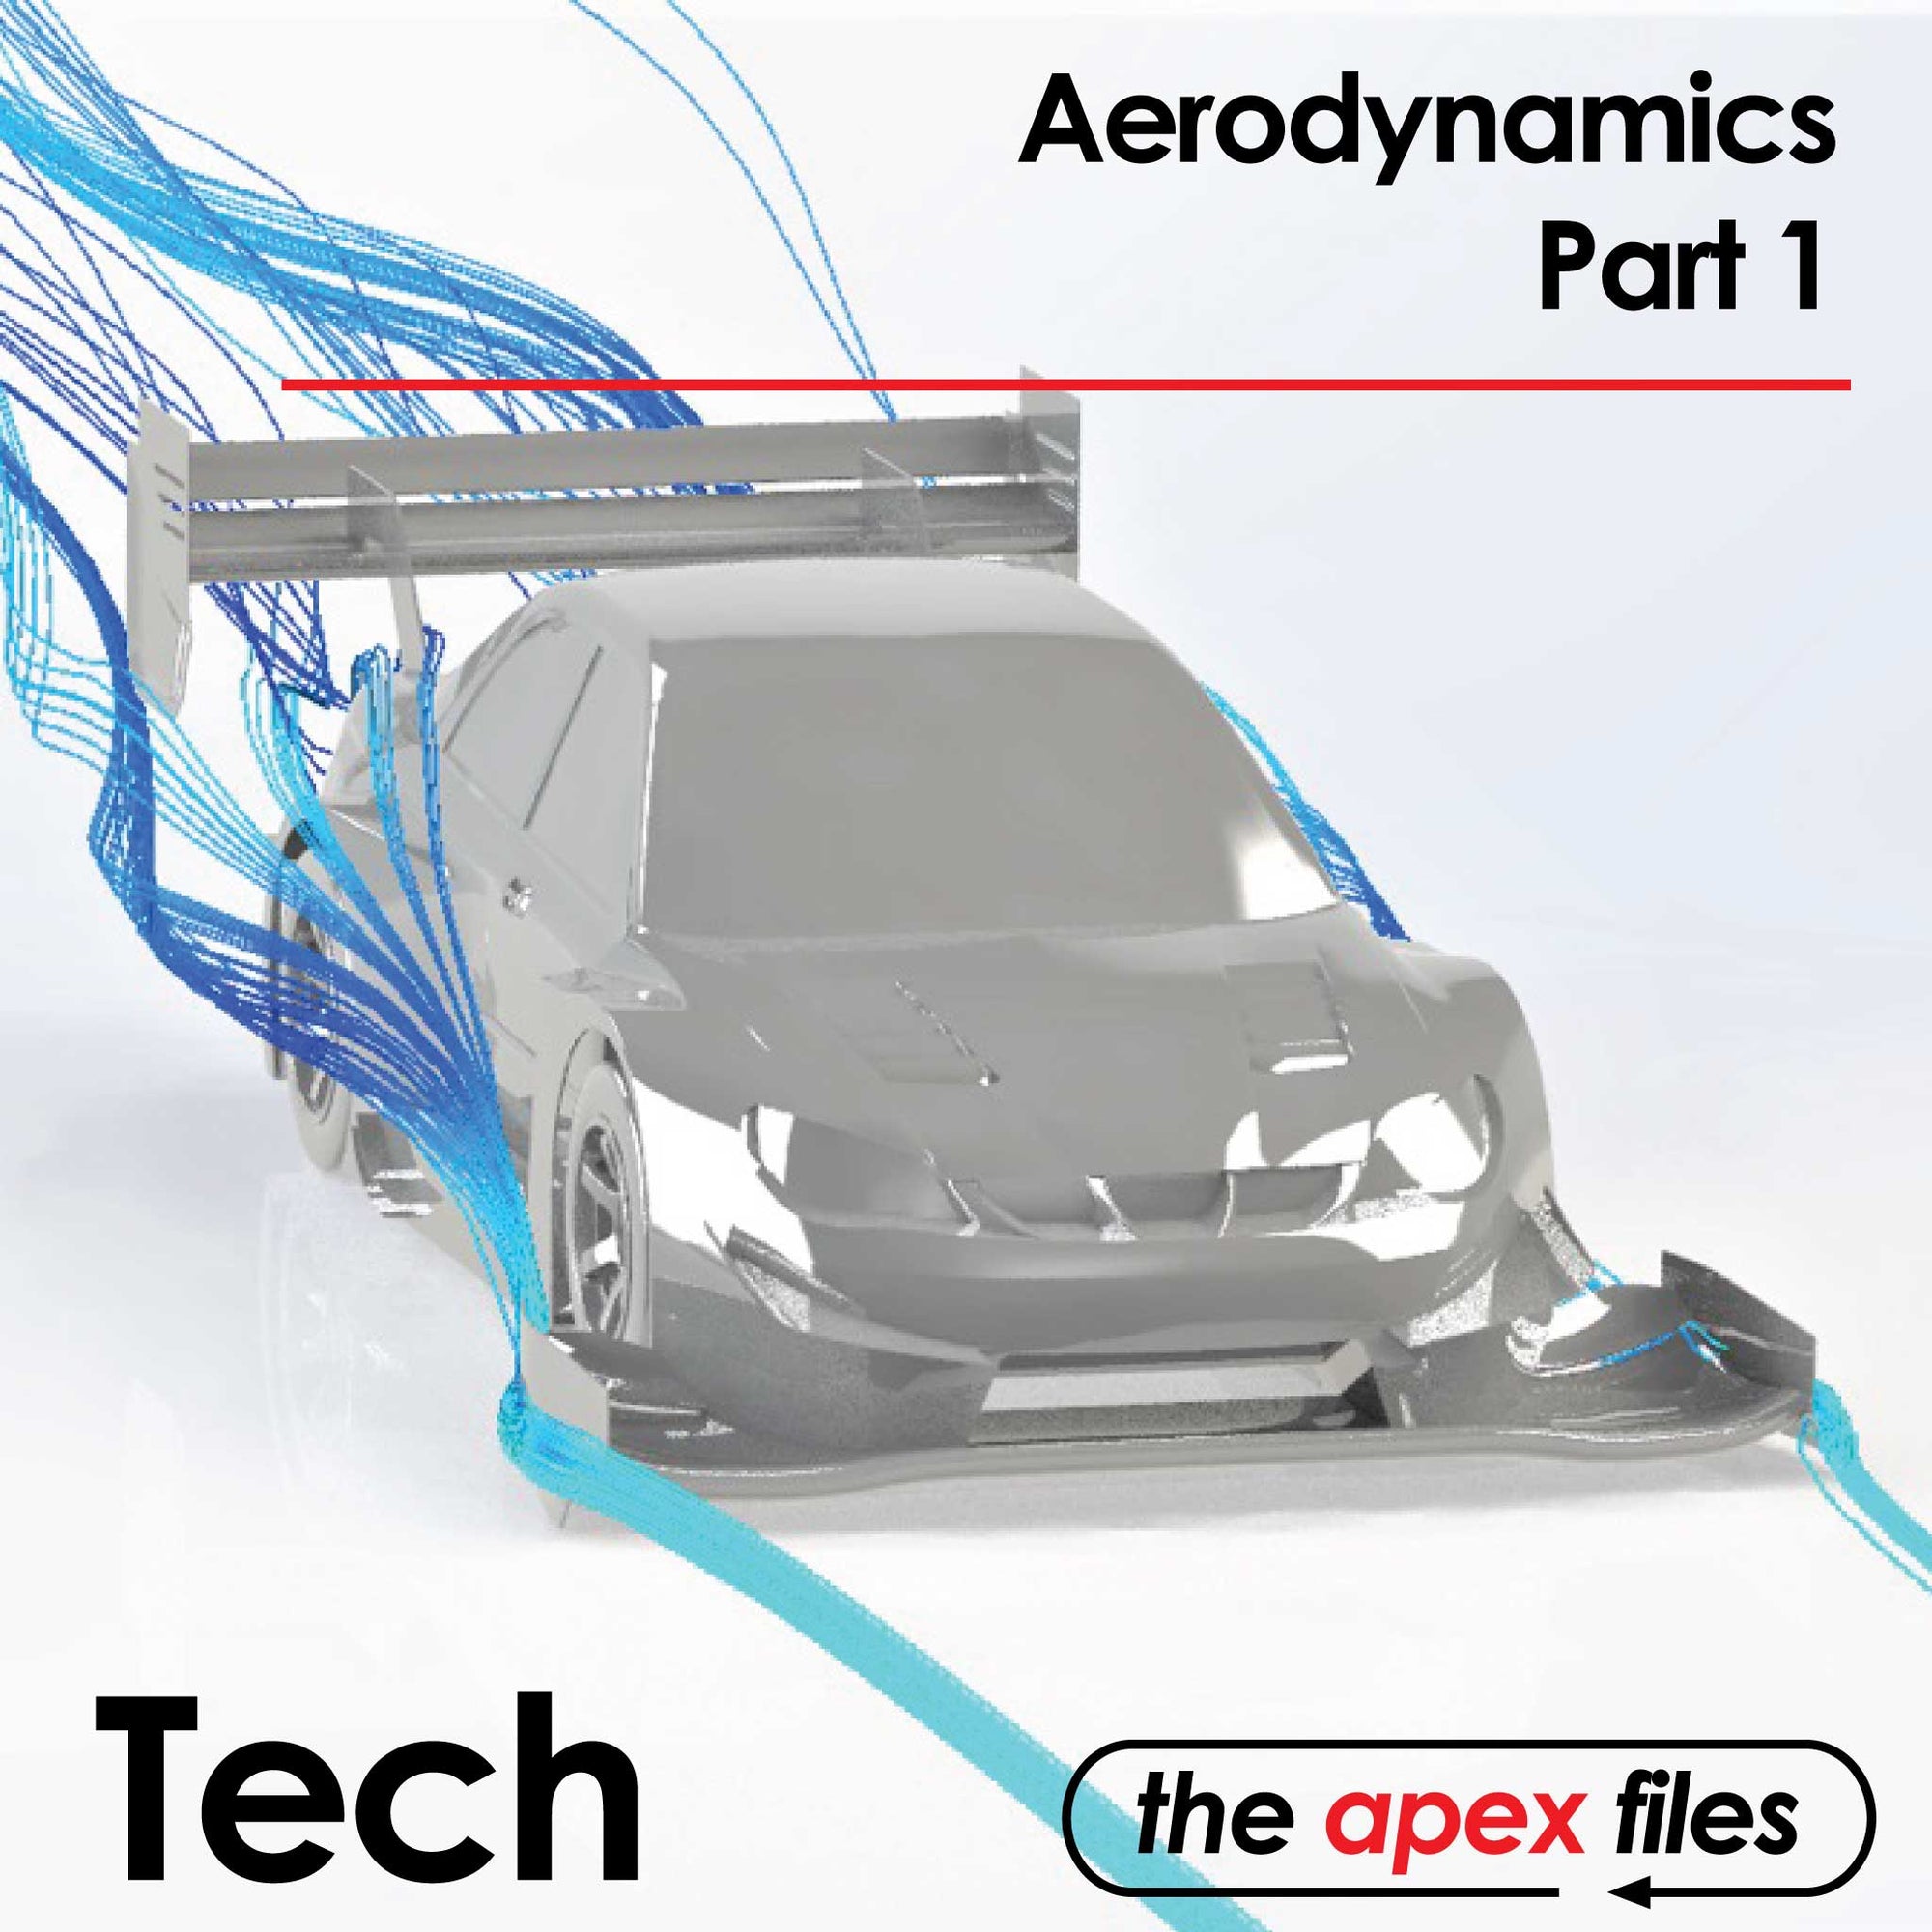 Aerodynamics Part 1